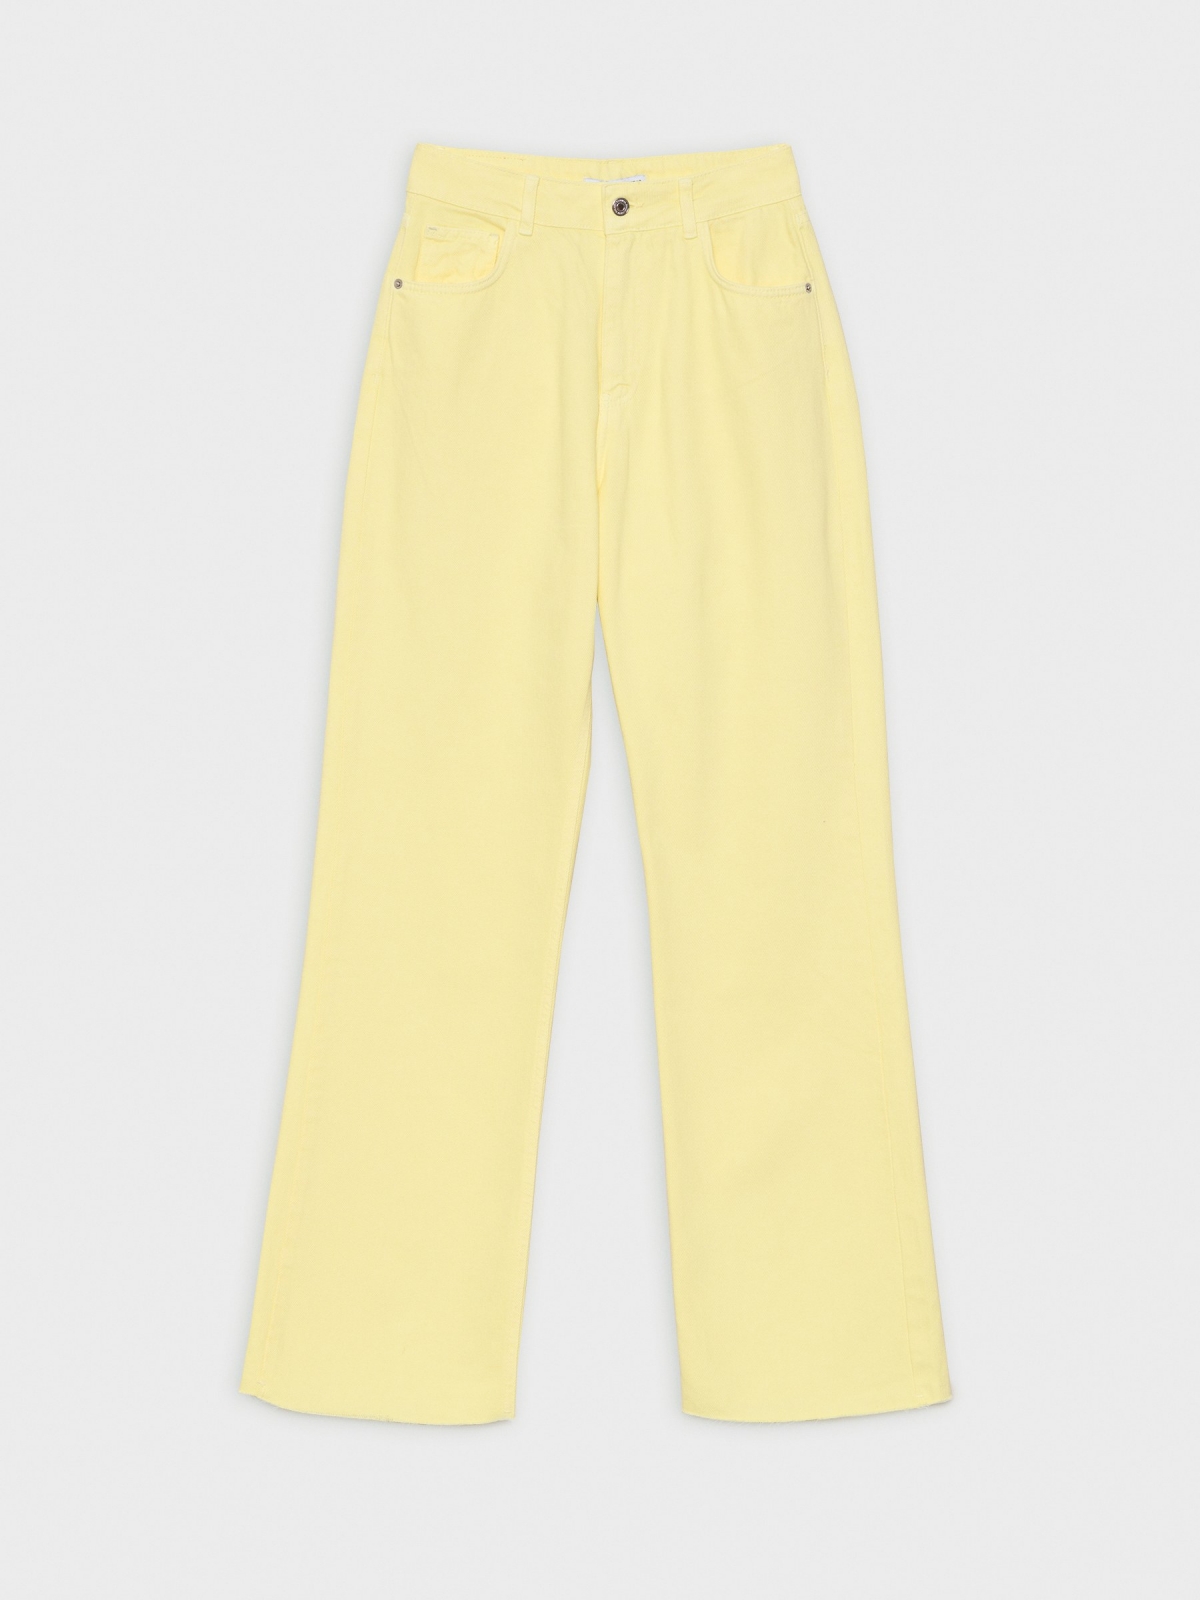  Jeans wide leg cinco bolsillos amarillo claro